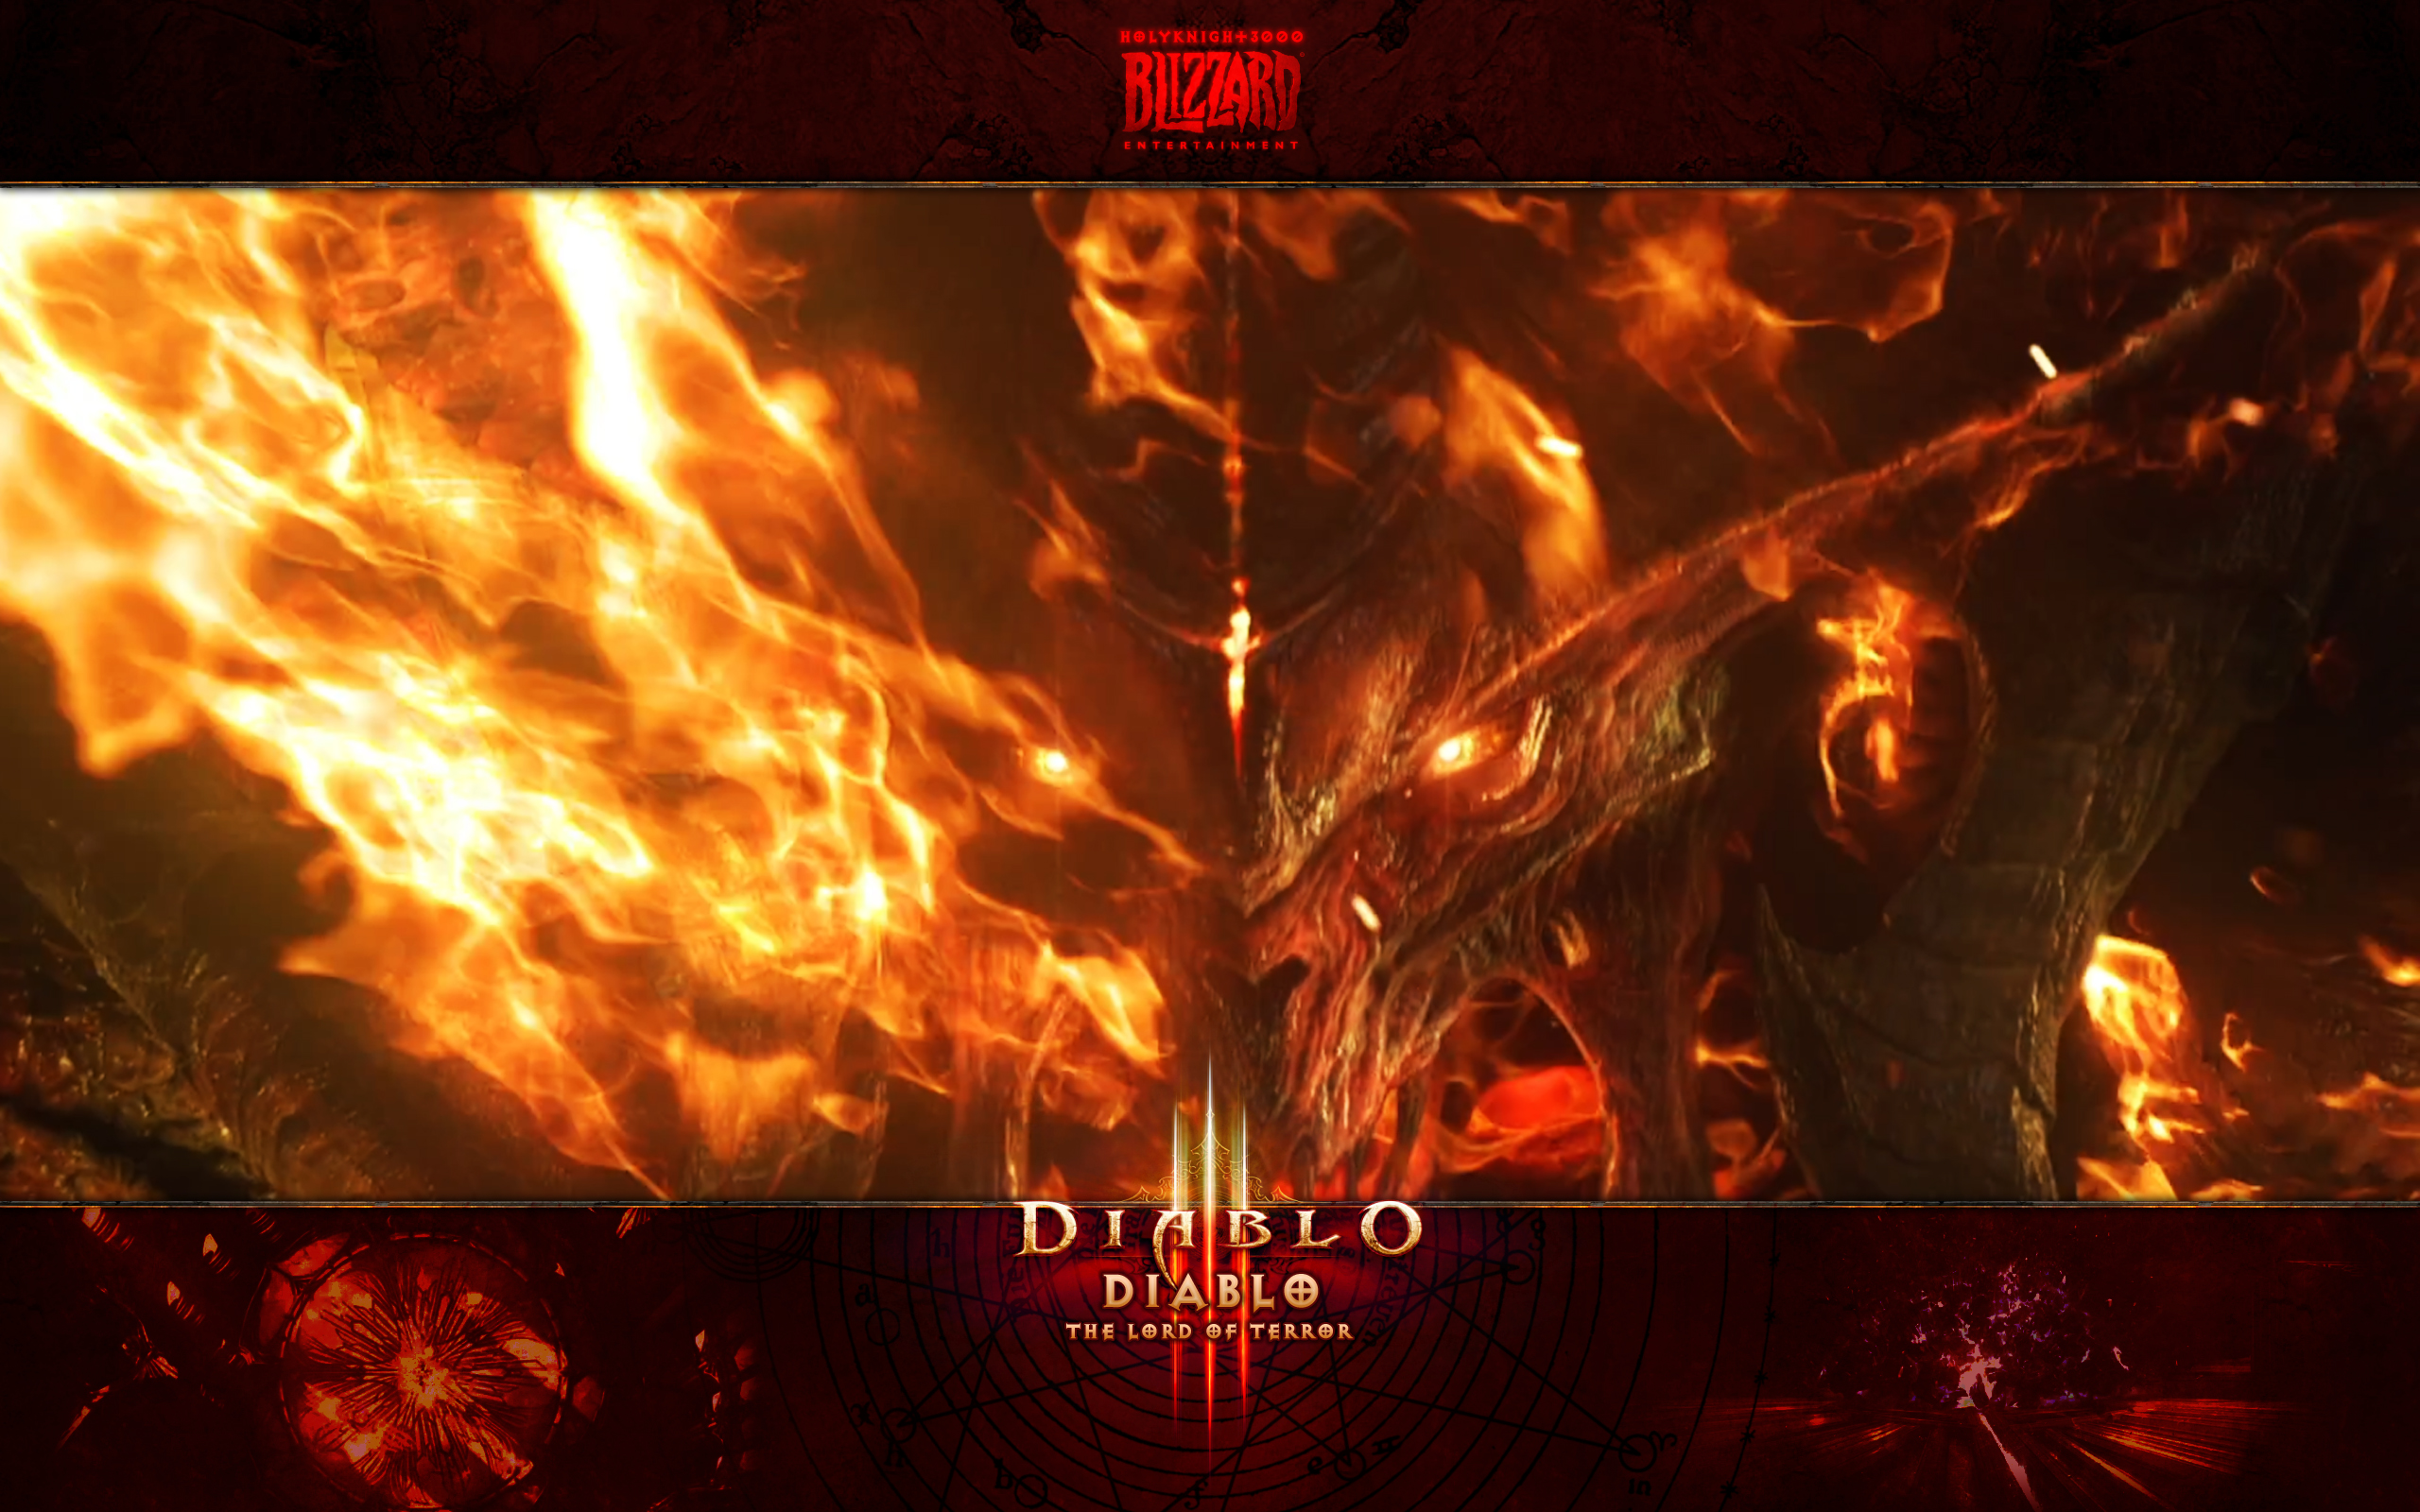 TV Spot I - Evil is Back #2 Diablo